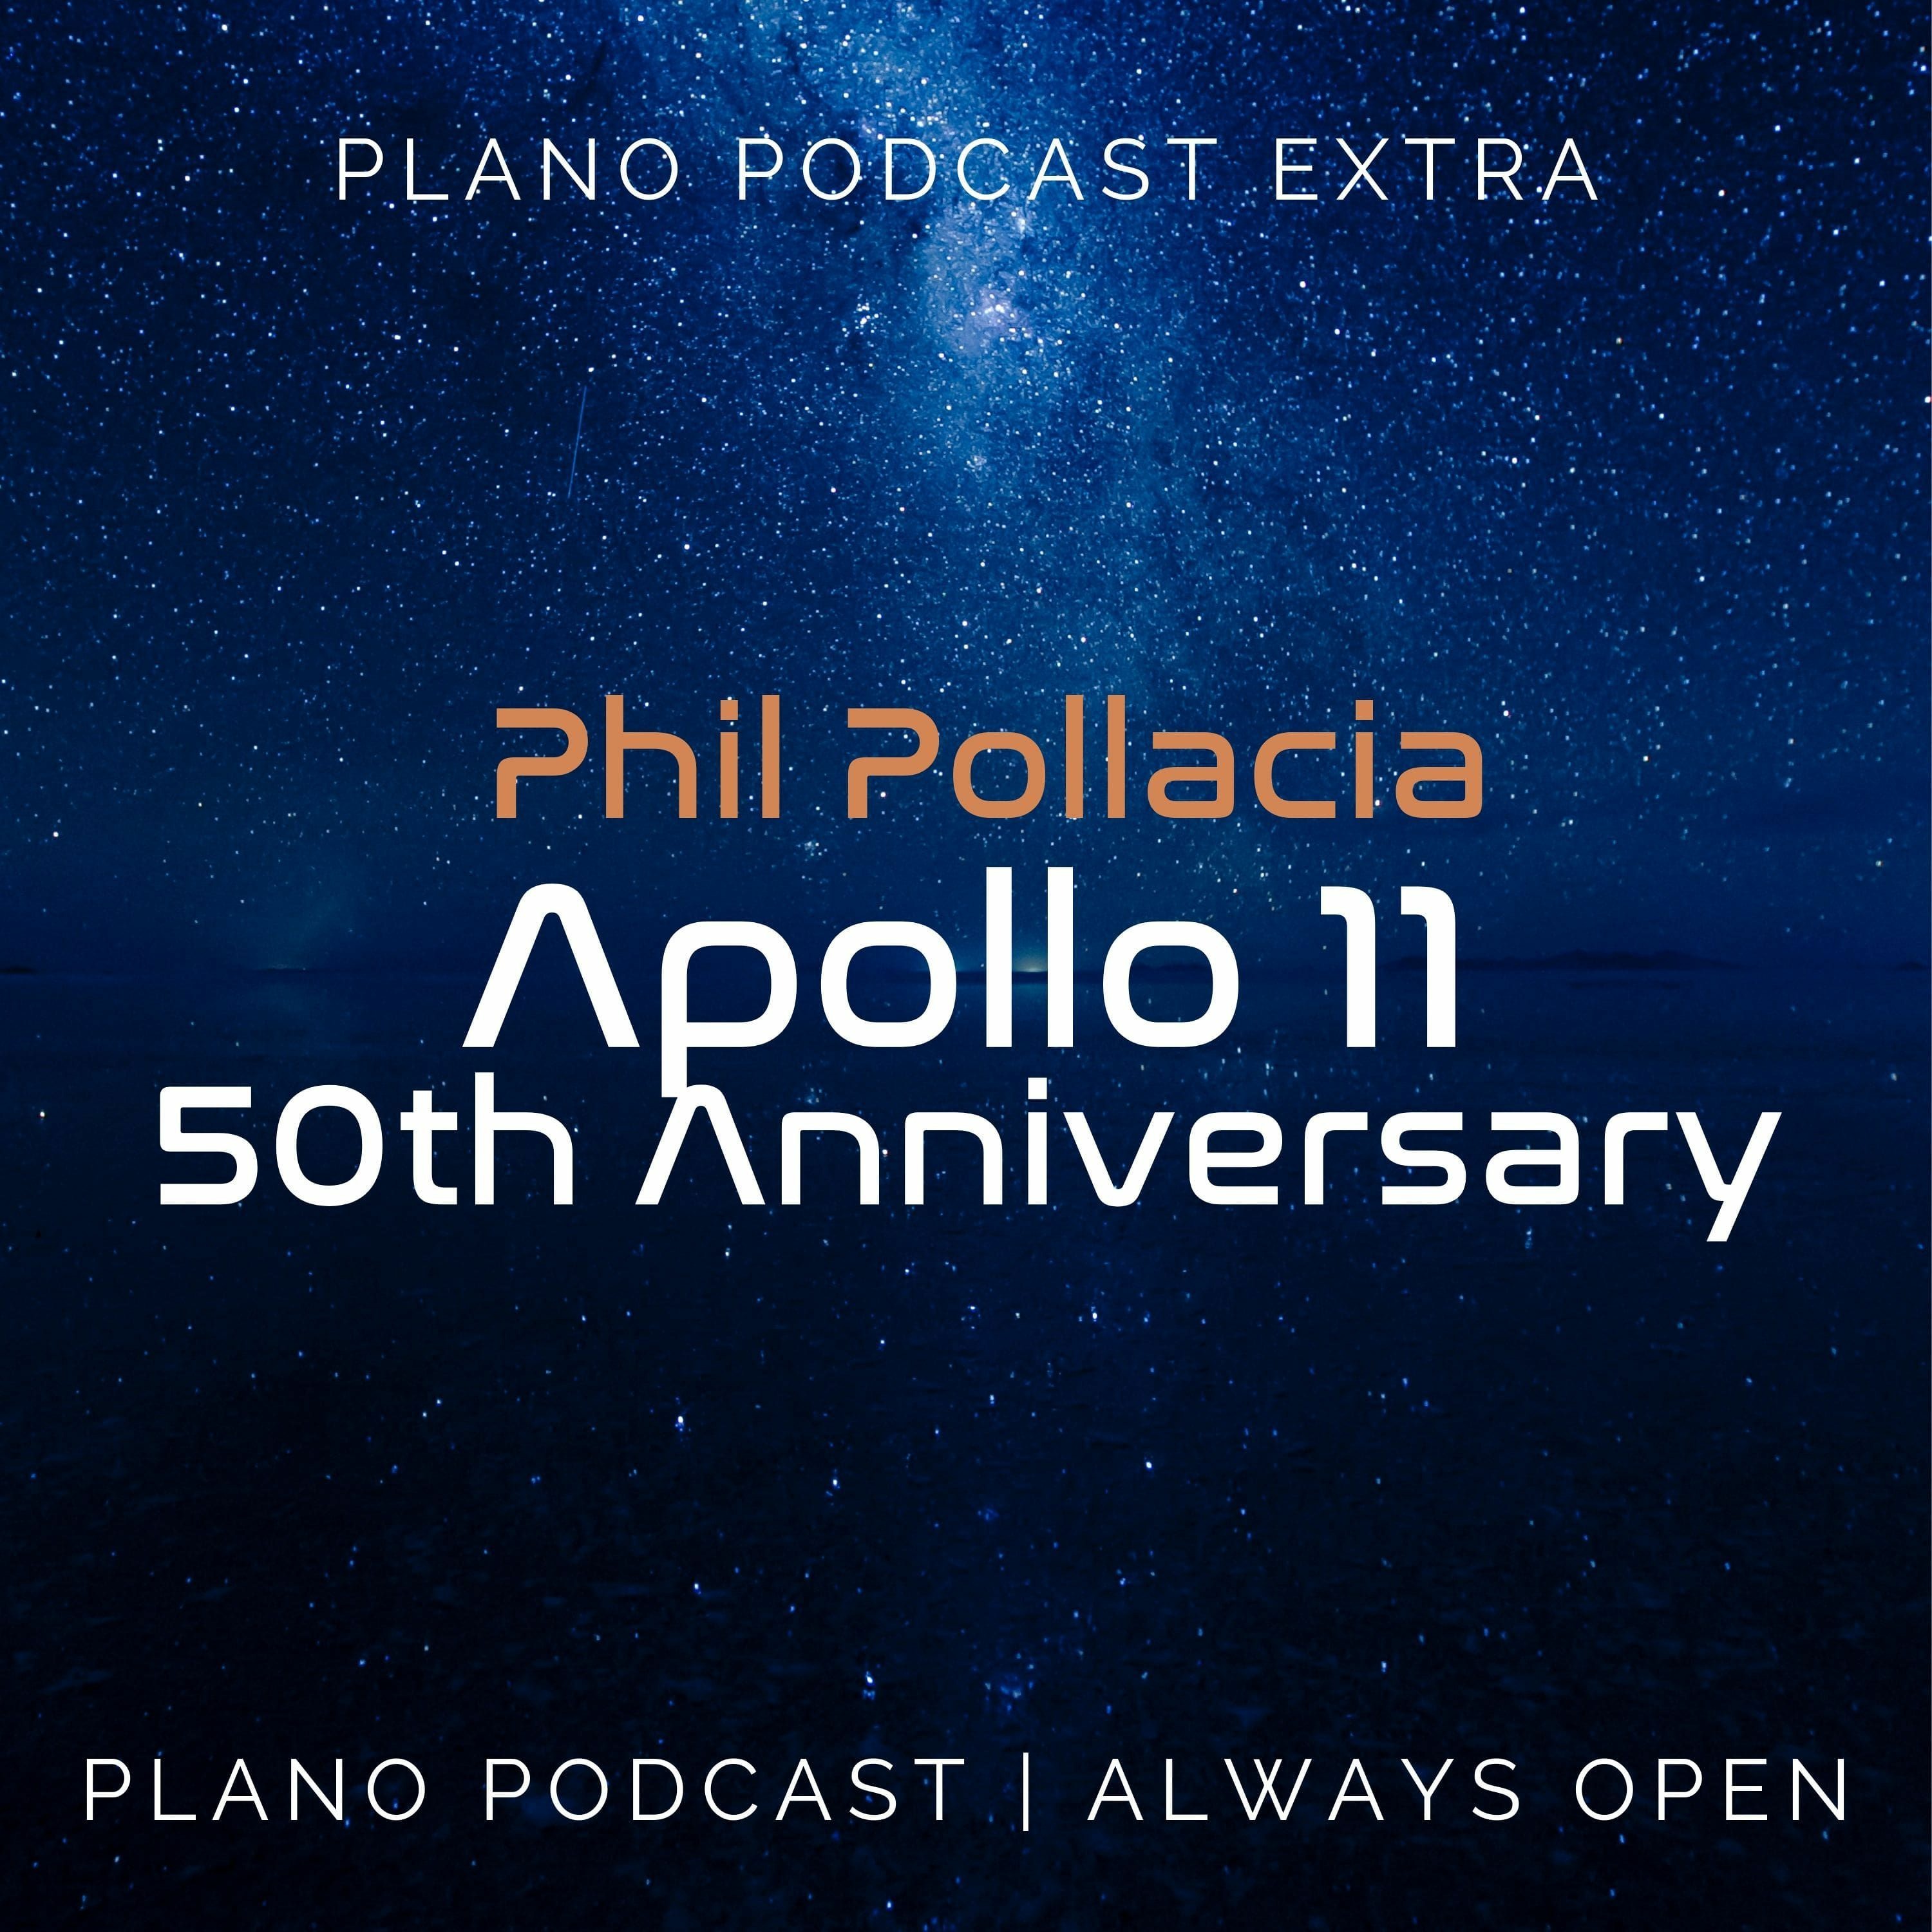 Podcast Extra | Phil Pollacia | Apollo 11 50th Anniversary